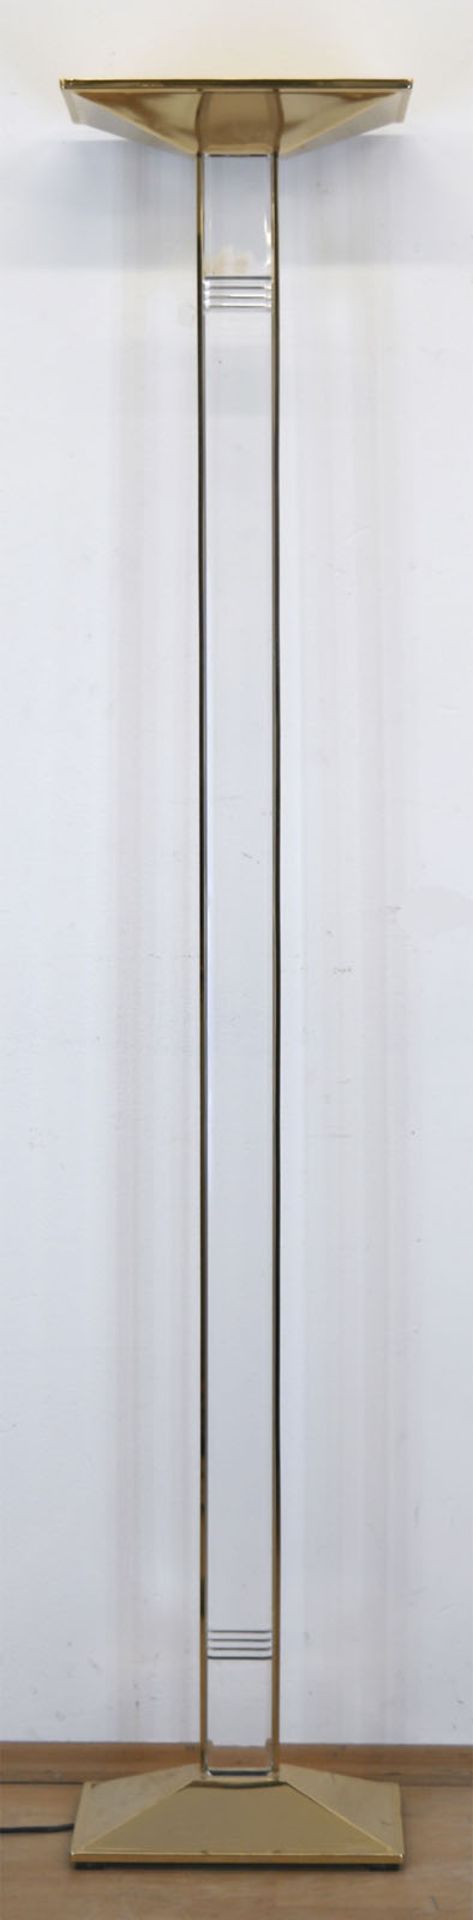 Design-Stehlampe, Deckenfluter, Messing, Schaft aus Acrylglas in Messingrahmung, Gebrauchspuren, 18